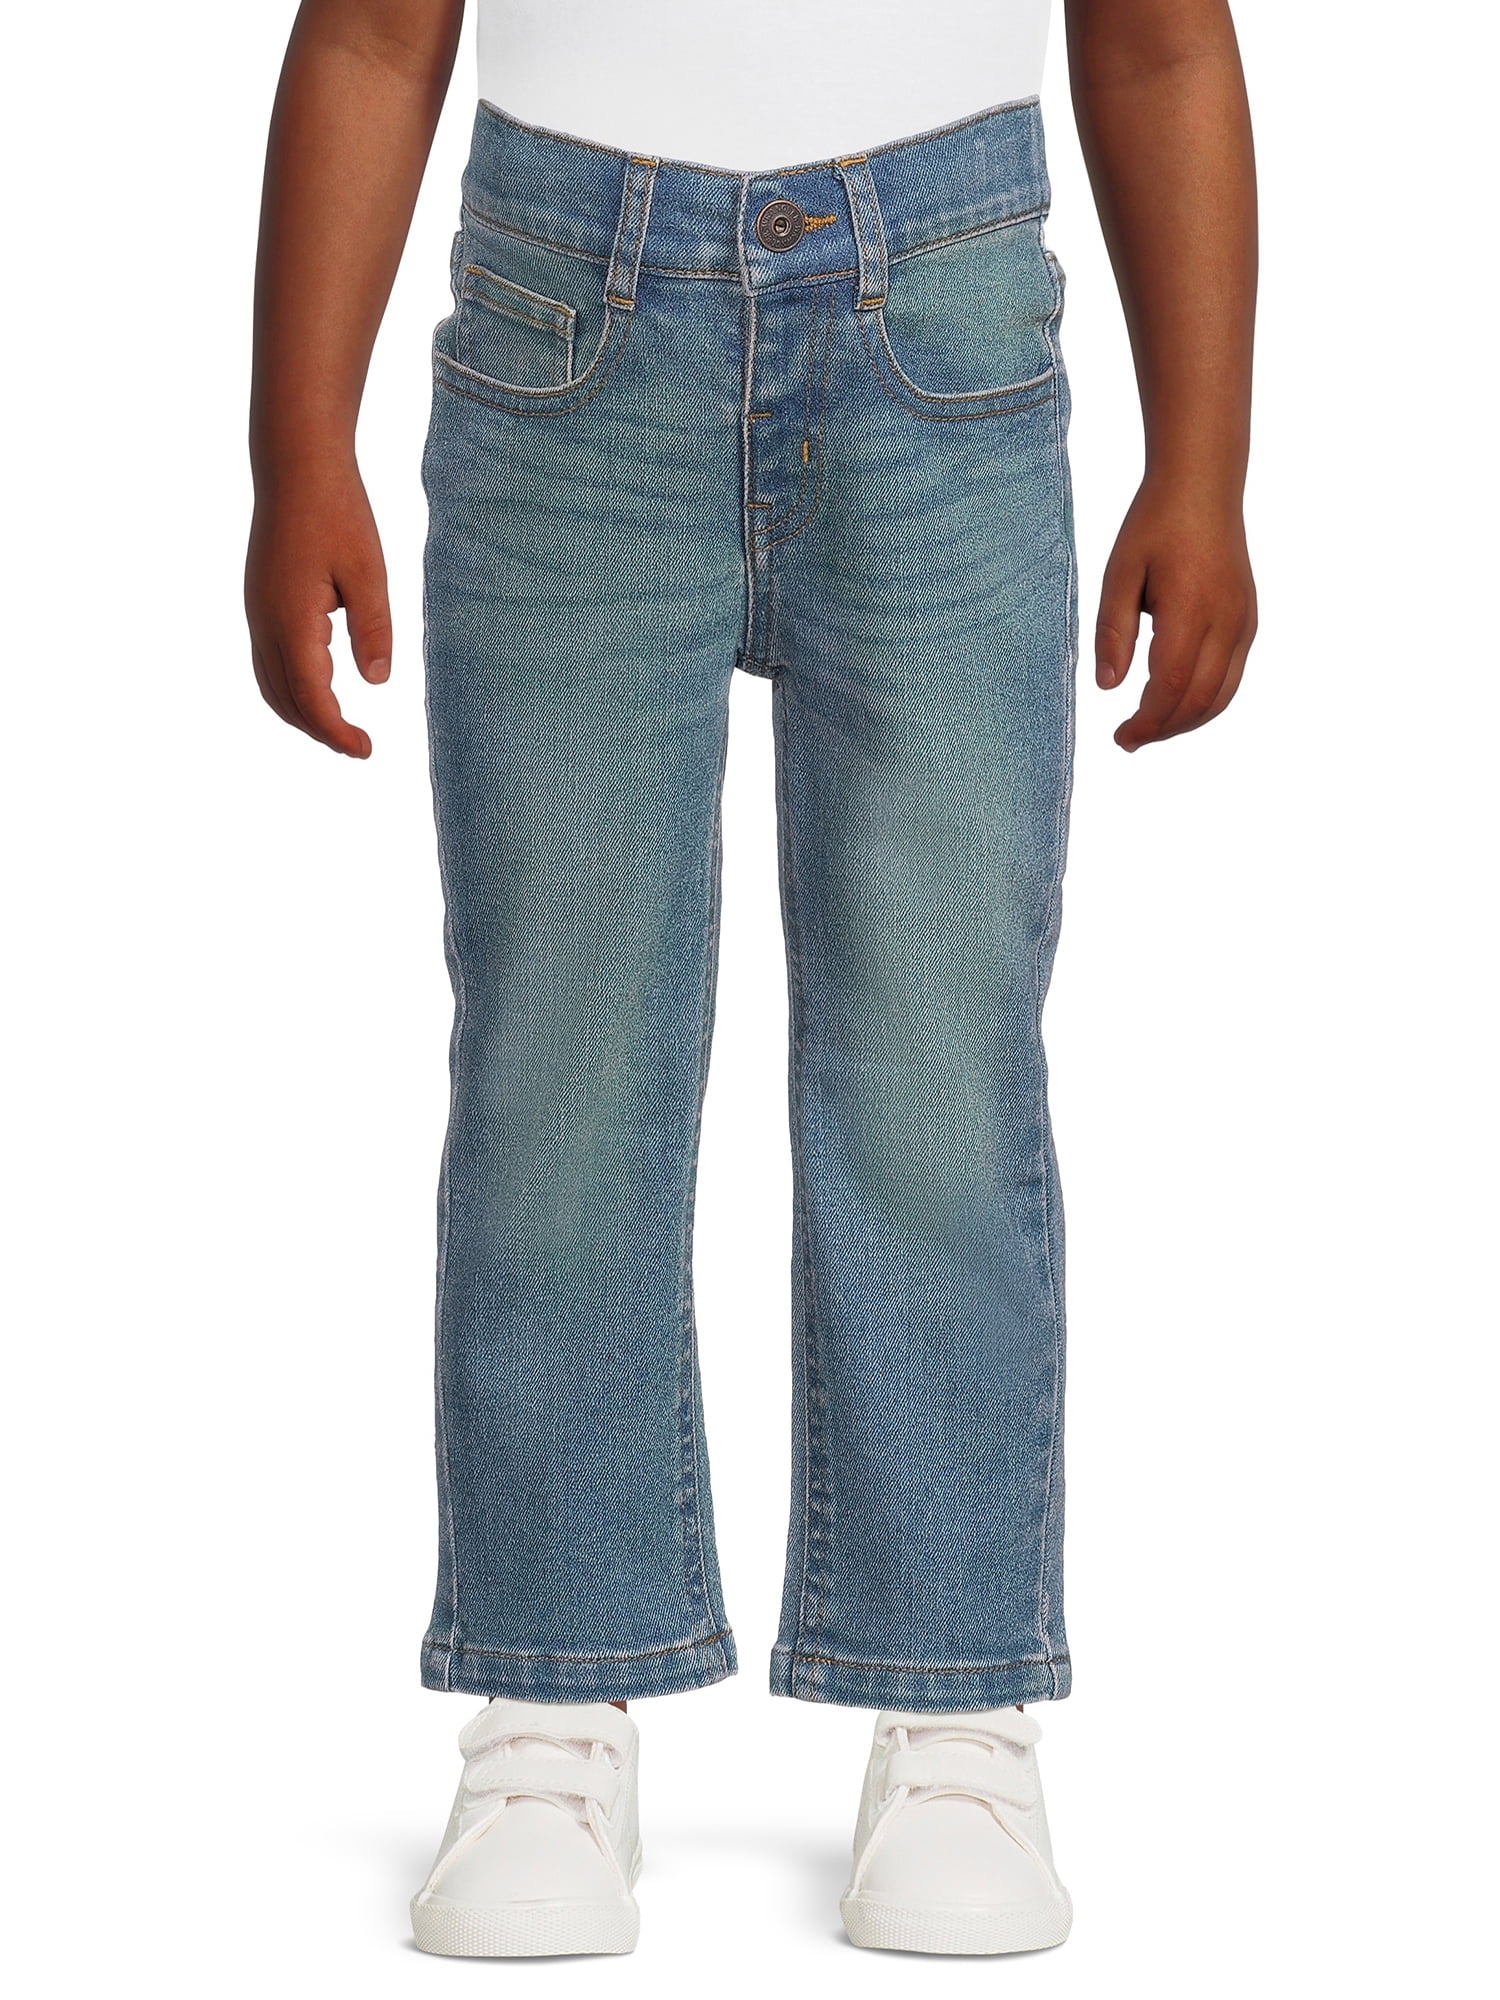 Wrangler Toddler Boy Pull-On Straight Leg Jeans, Sizes 12M-5T - Walmart.com